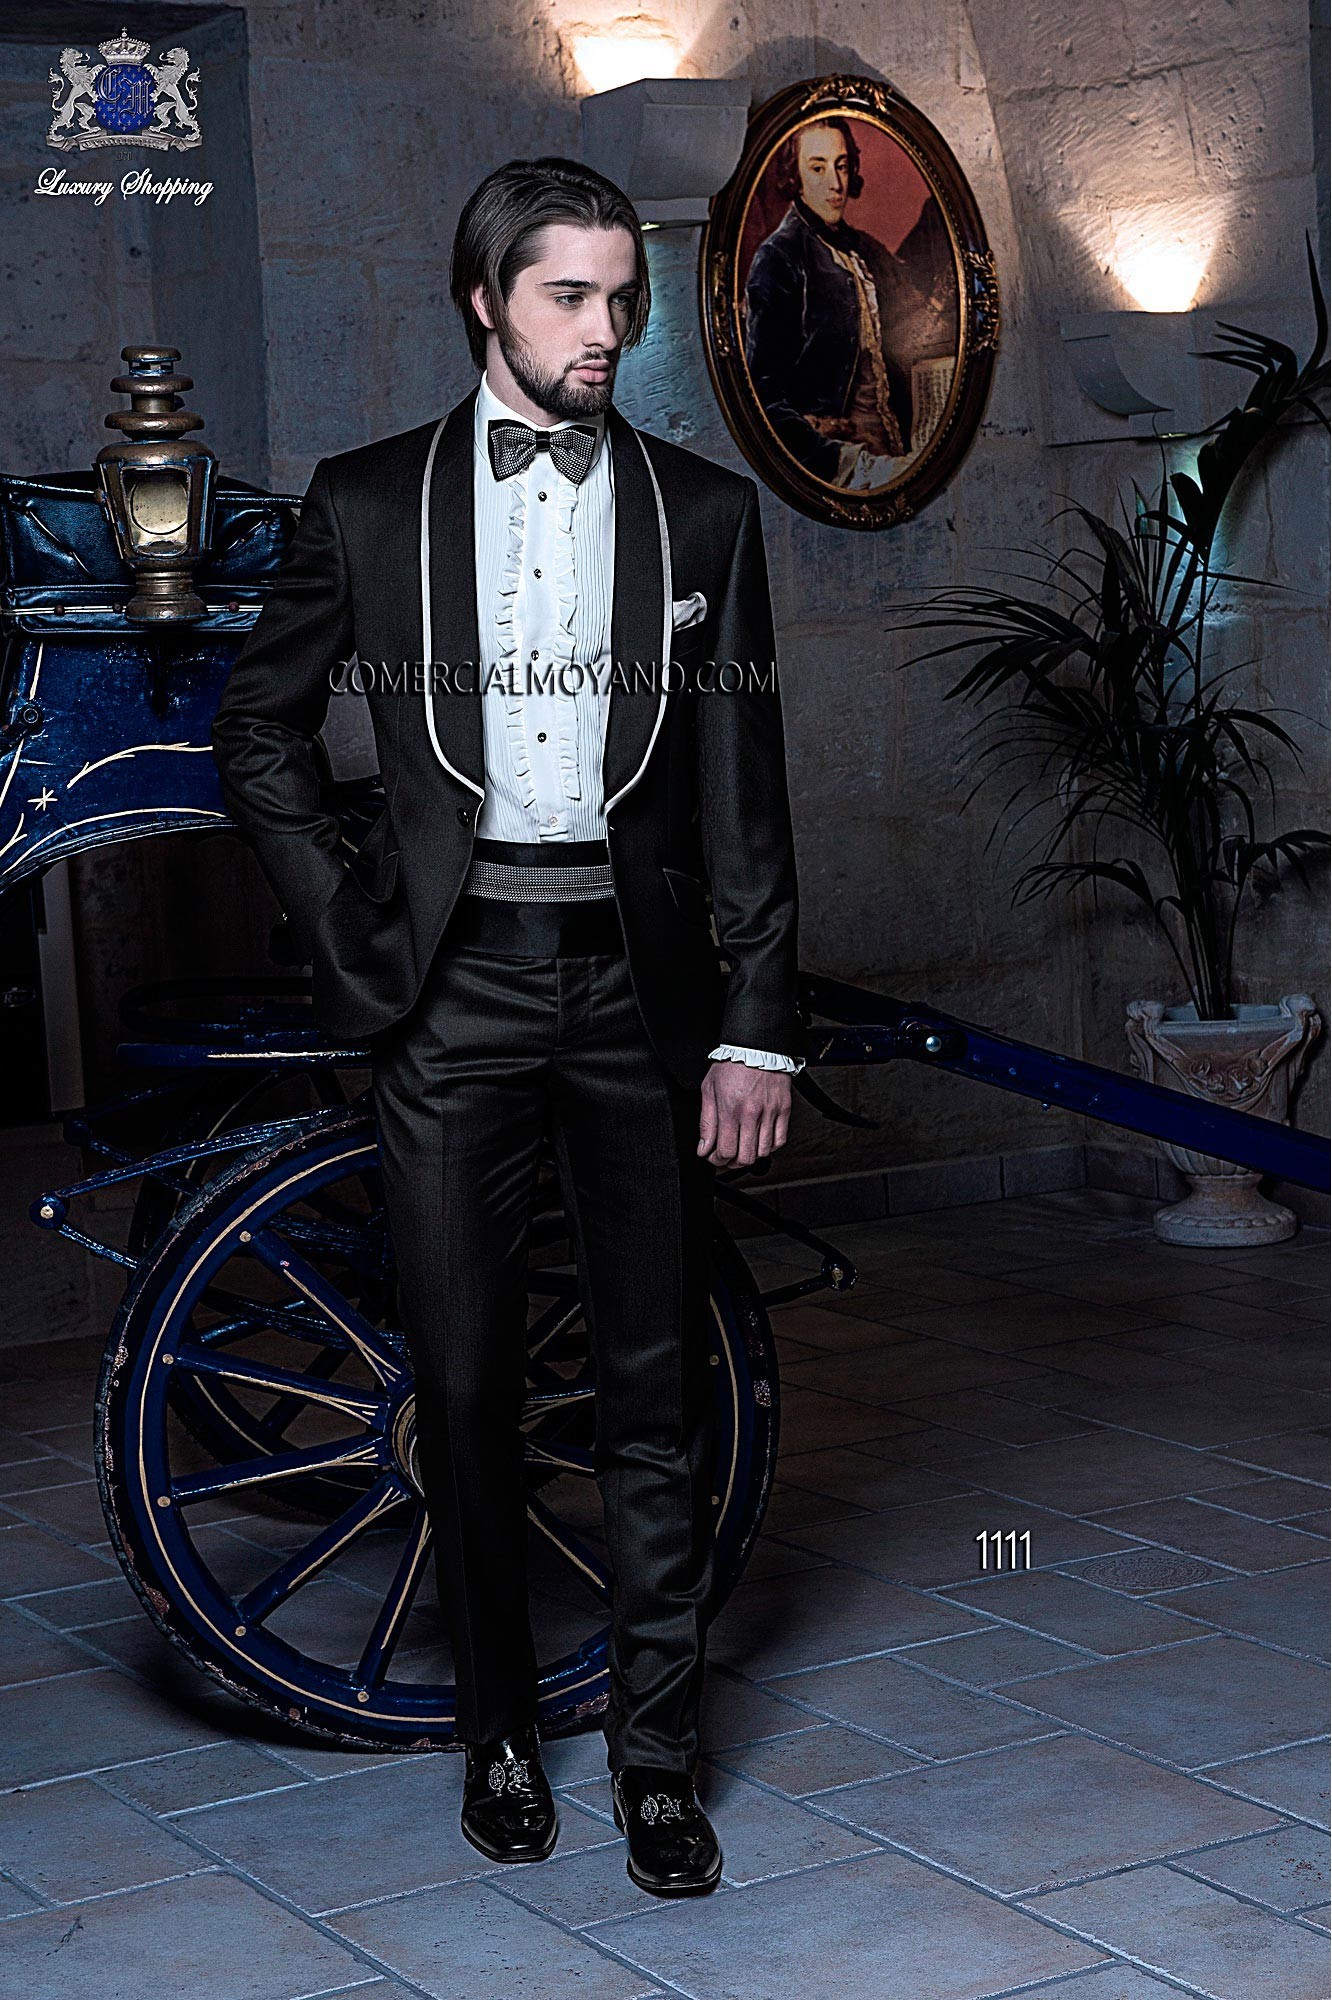 Black Tie Black men wedding suit model 1111 Mario Moyano